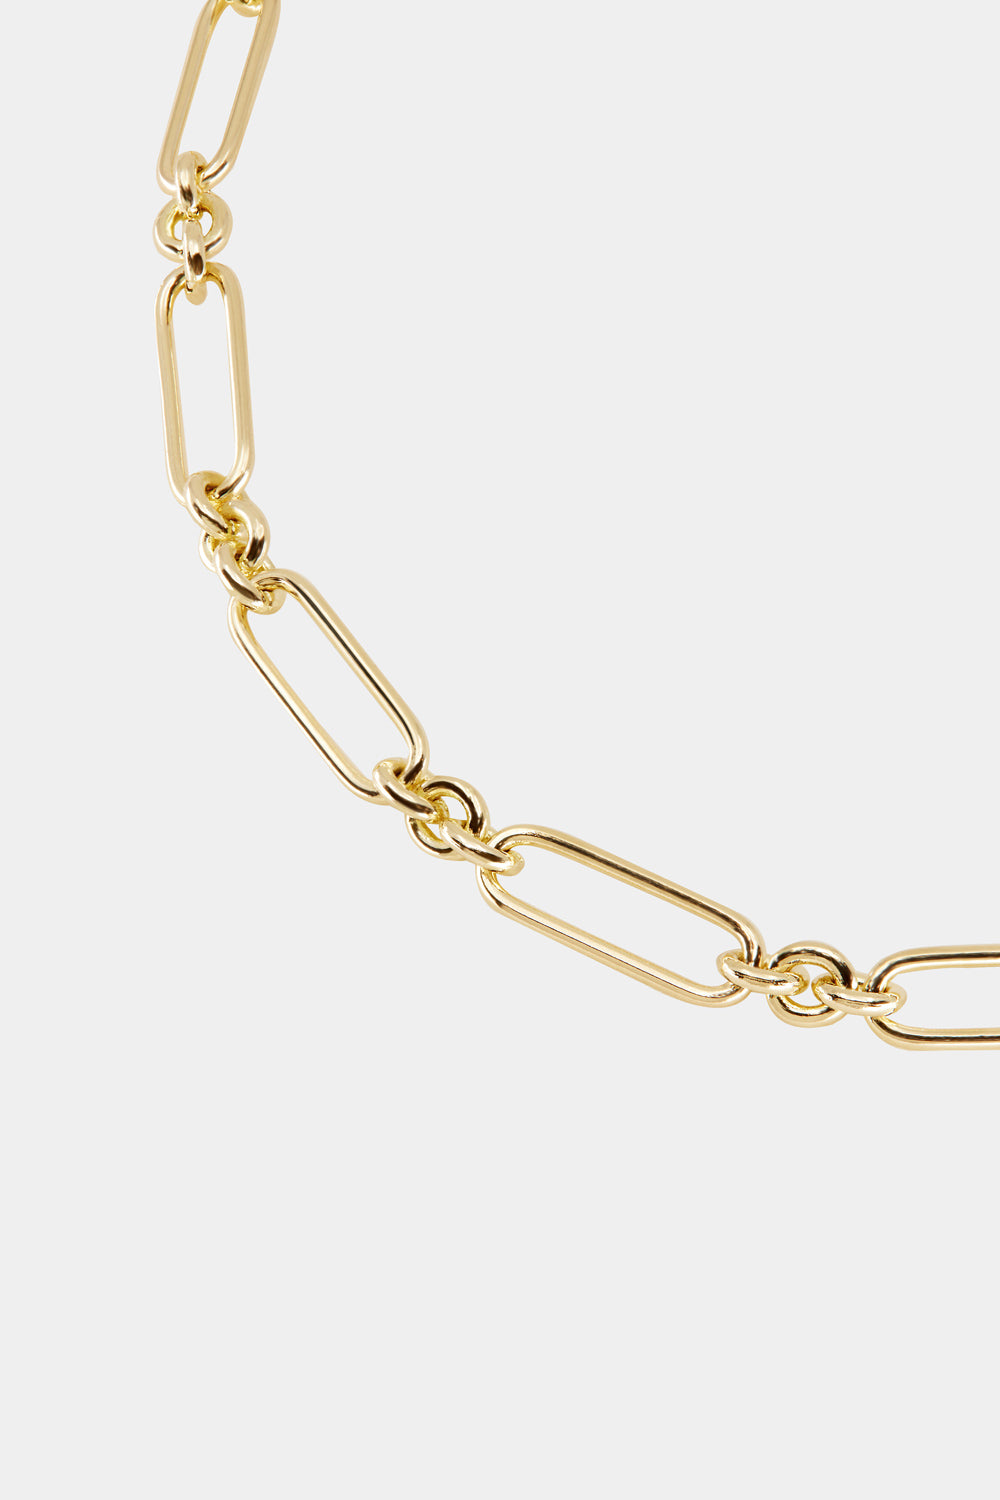 Mini Lennox Necklace | Gold, More Options Available| Natasha Schweitzer